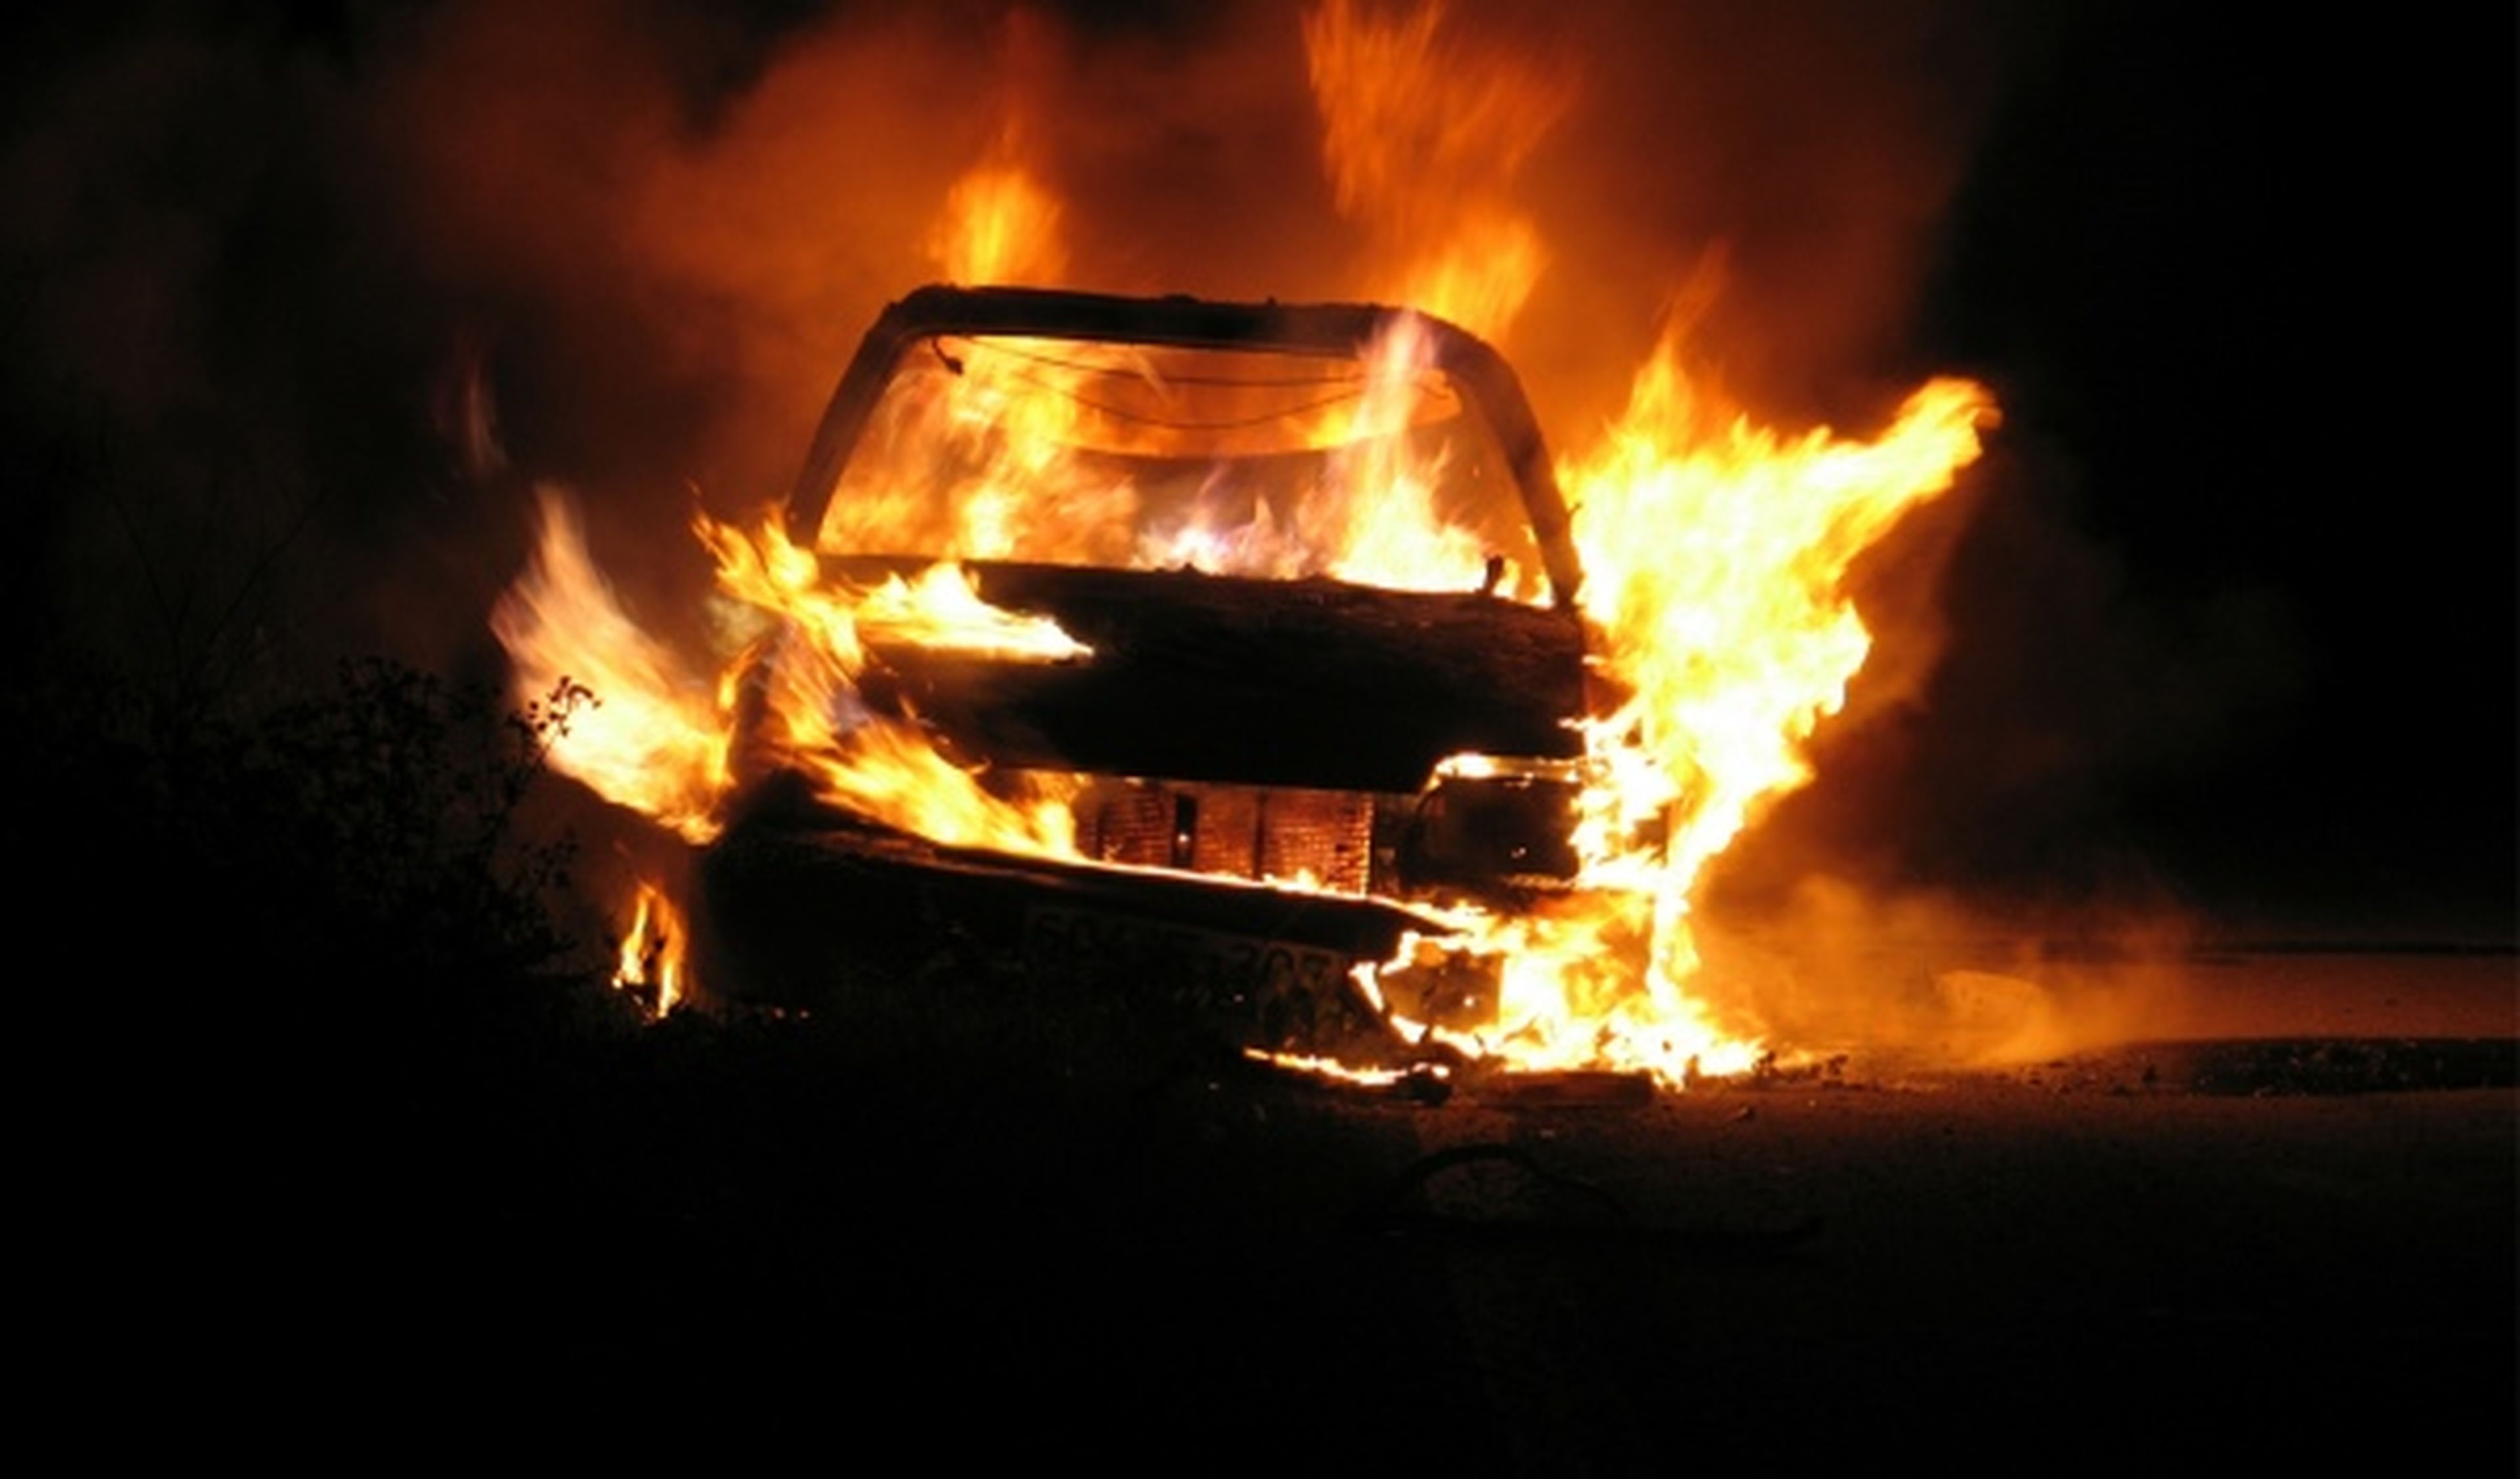 Alemania está que arde: se queman 47 coches en 72 horas